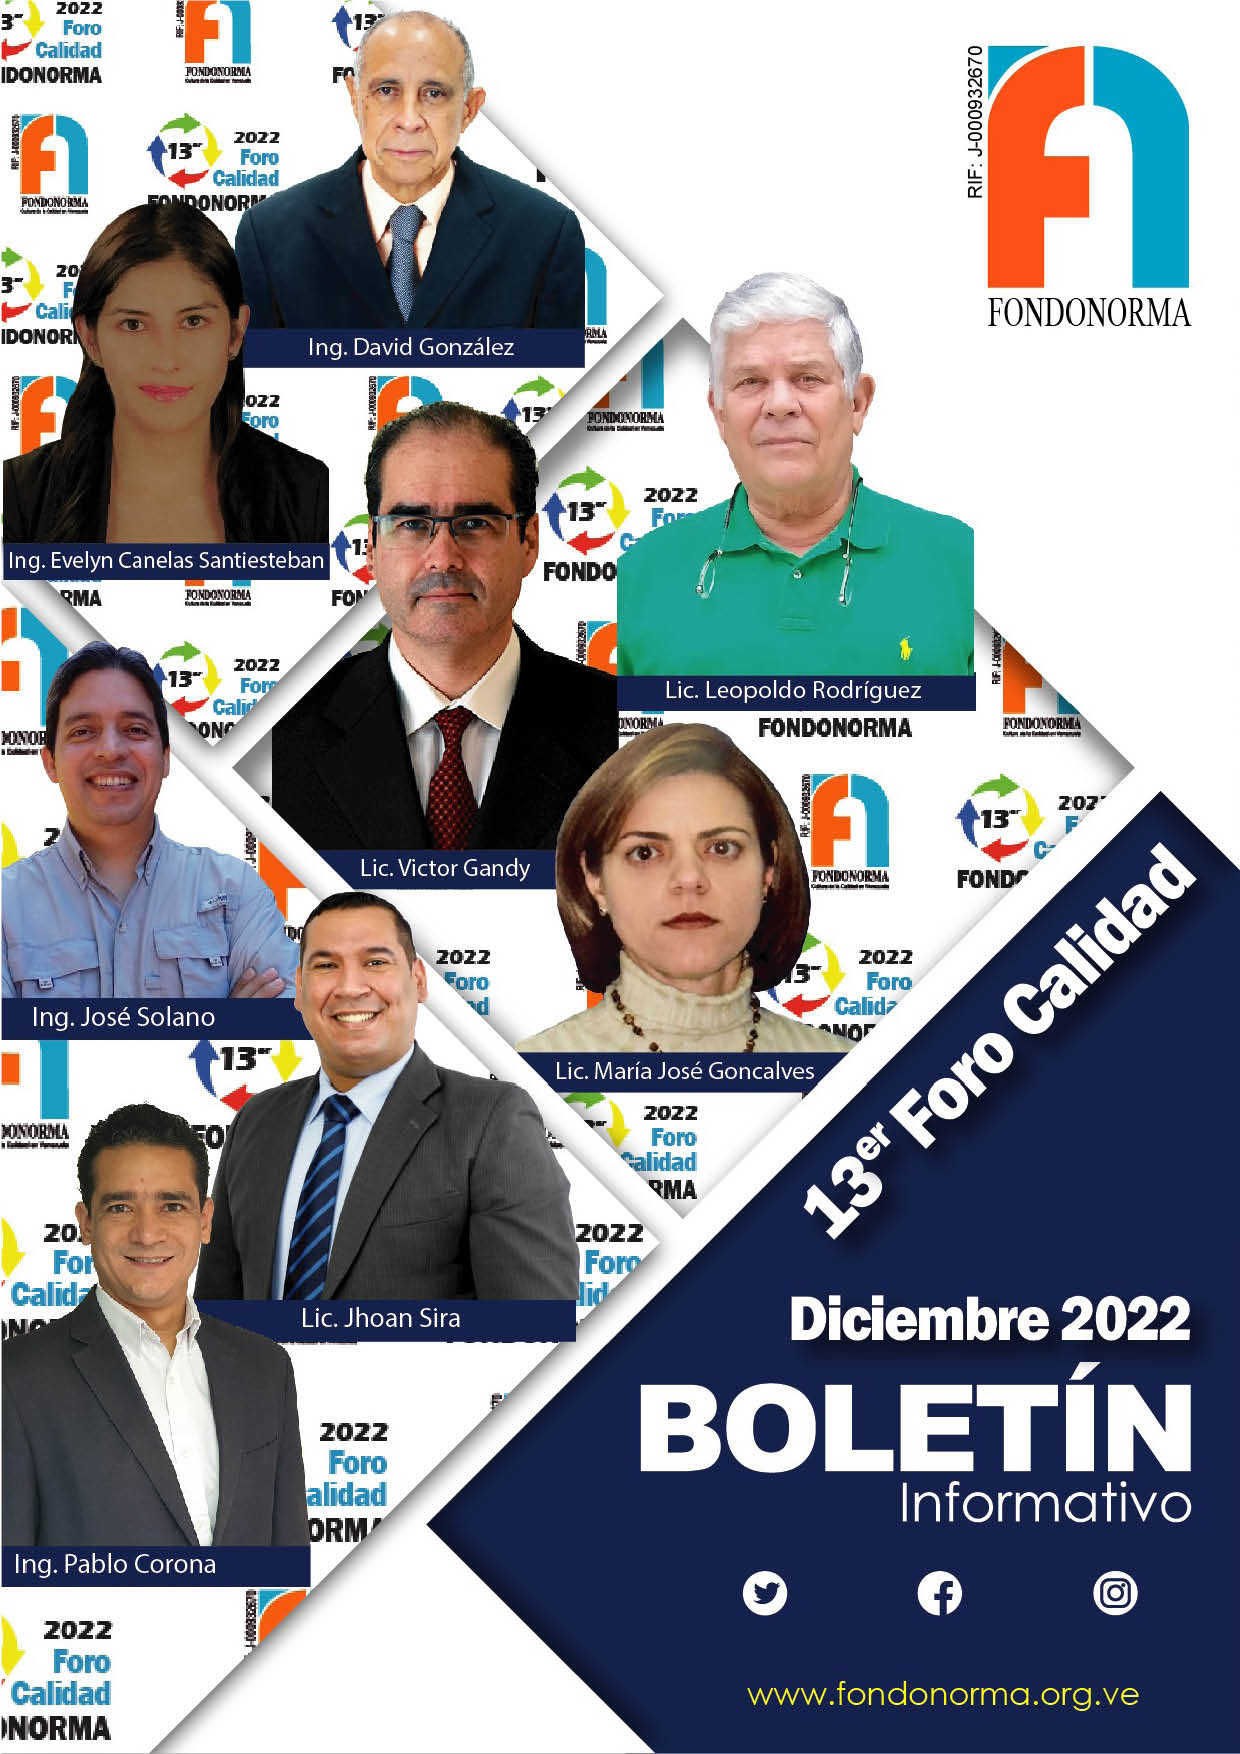 PORTADA BOLETIN DIC 2022